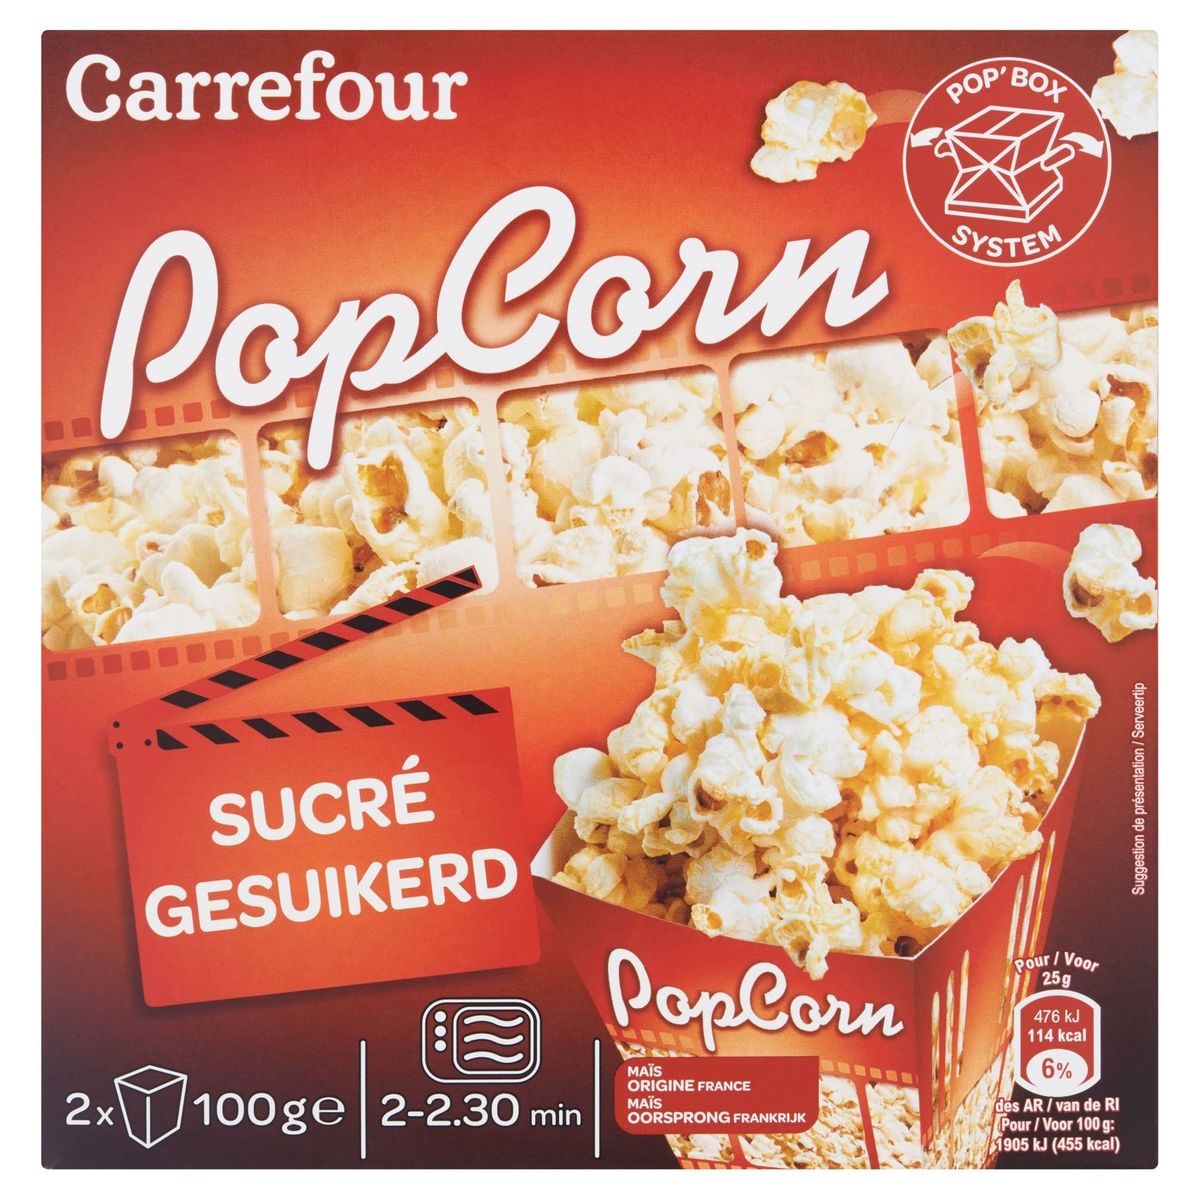 Carrefour Popcorn Sucré 2 x 100 g